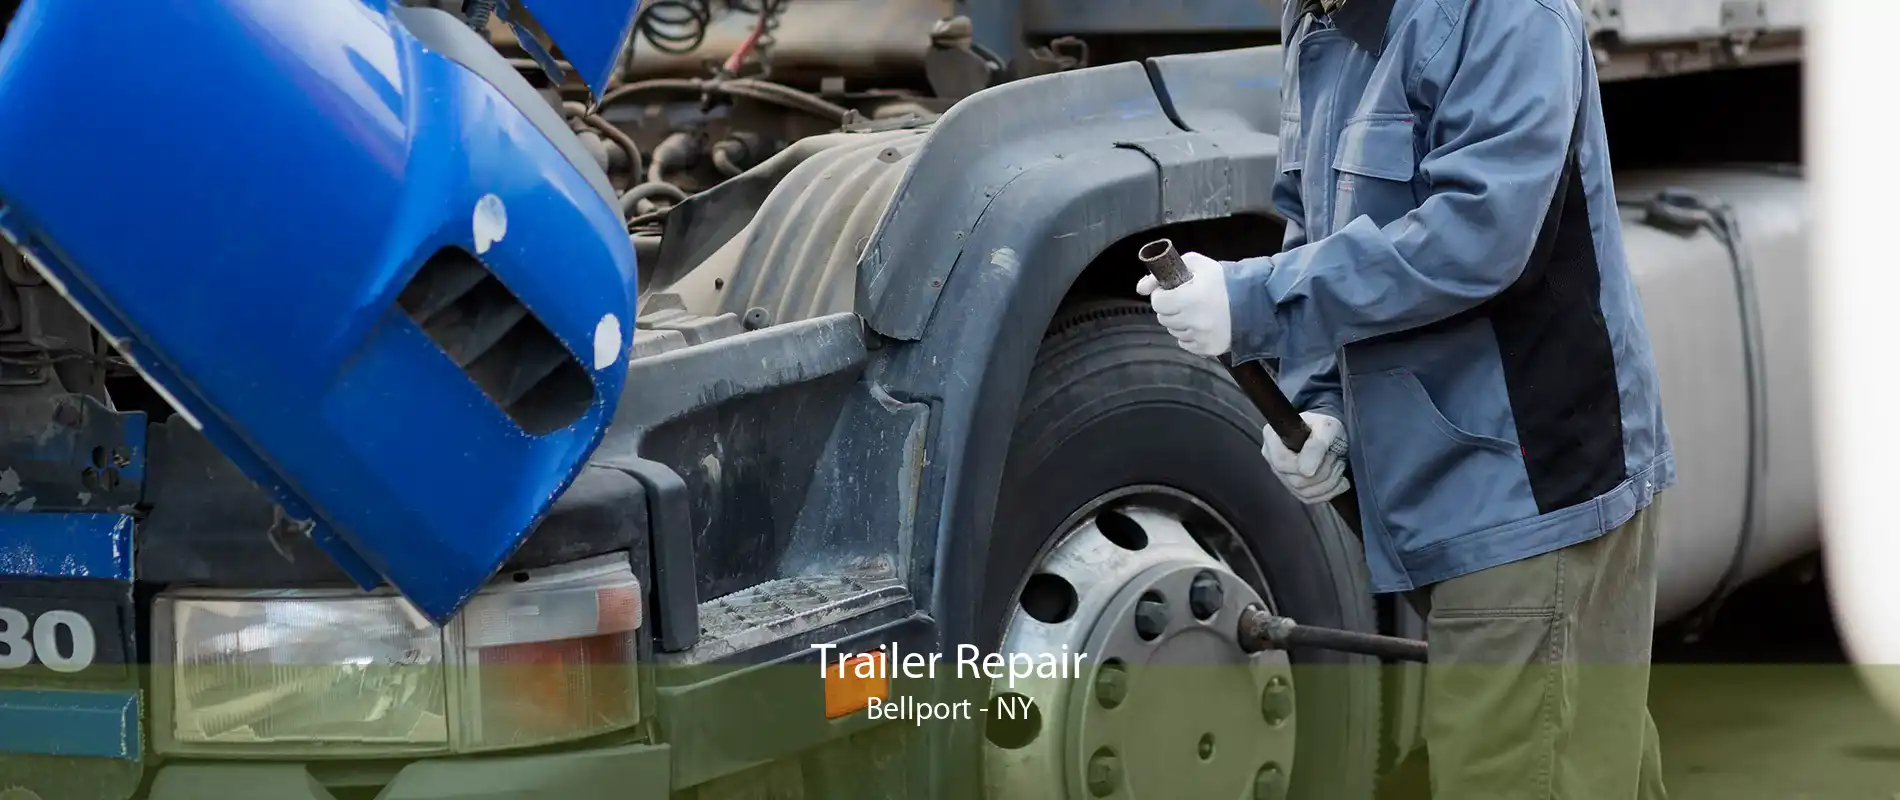 Trailer Repair Bellport - NY